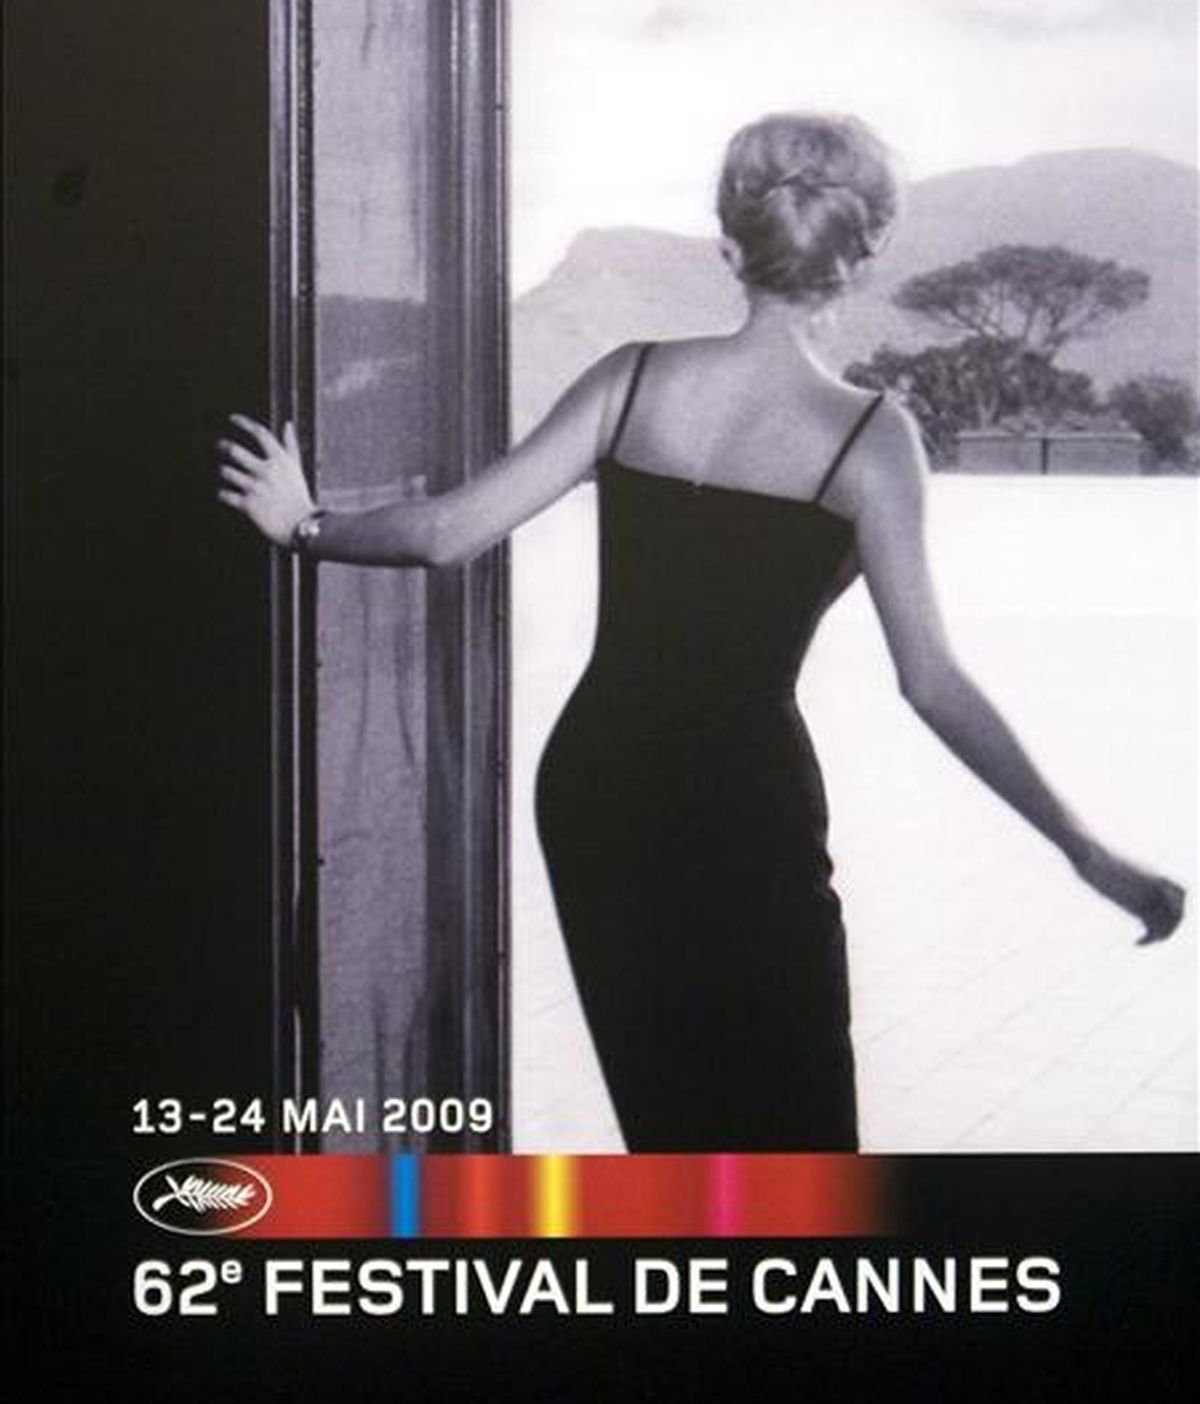 Vista del cartel de la 62ª edición del festival de cine de Cannes, que fue presentado ayer, en París (Francia). La actriz francesa Isabelle Huppert presidirá el jurado de la presente edición, que se celebrará del 13 al 24 de mayo. EFE